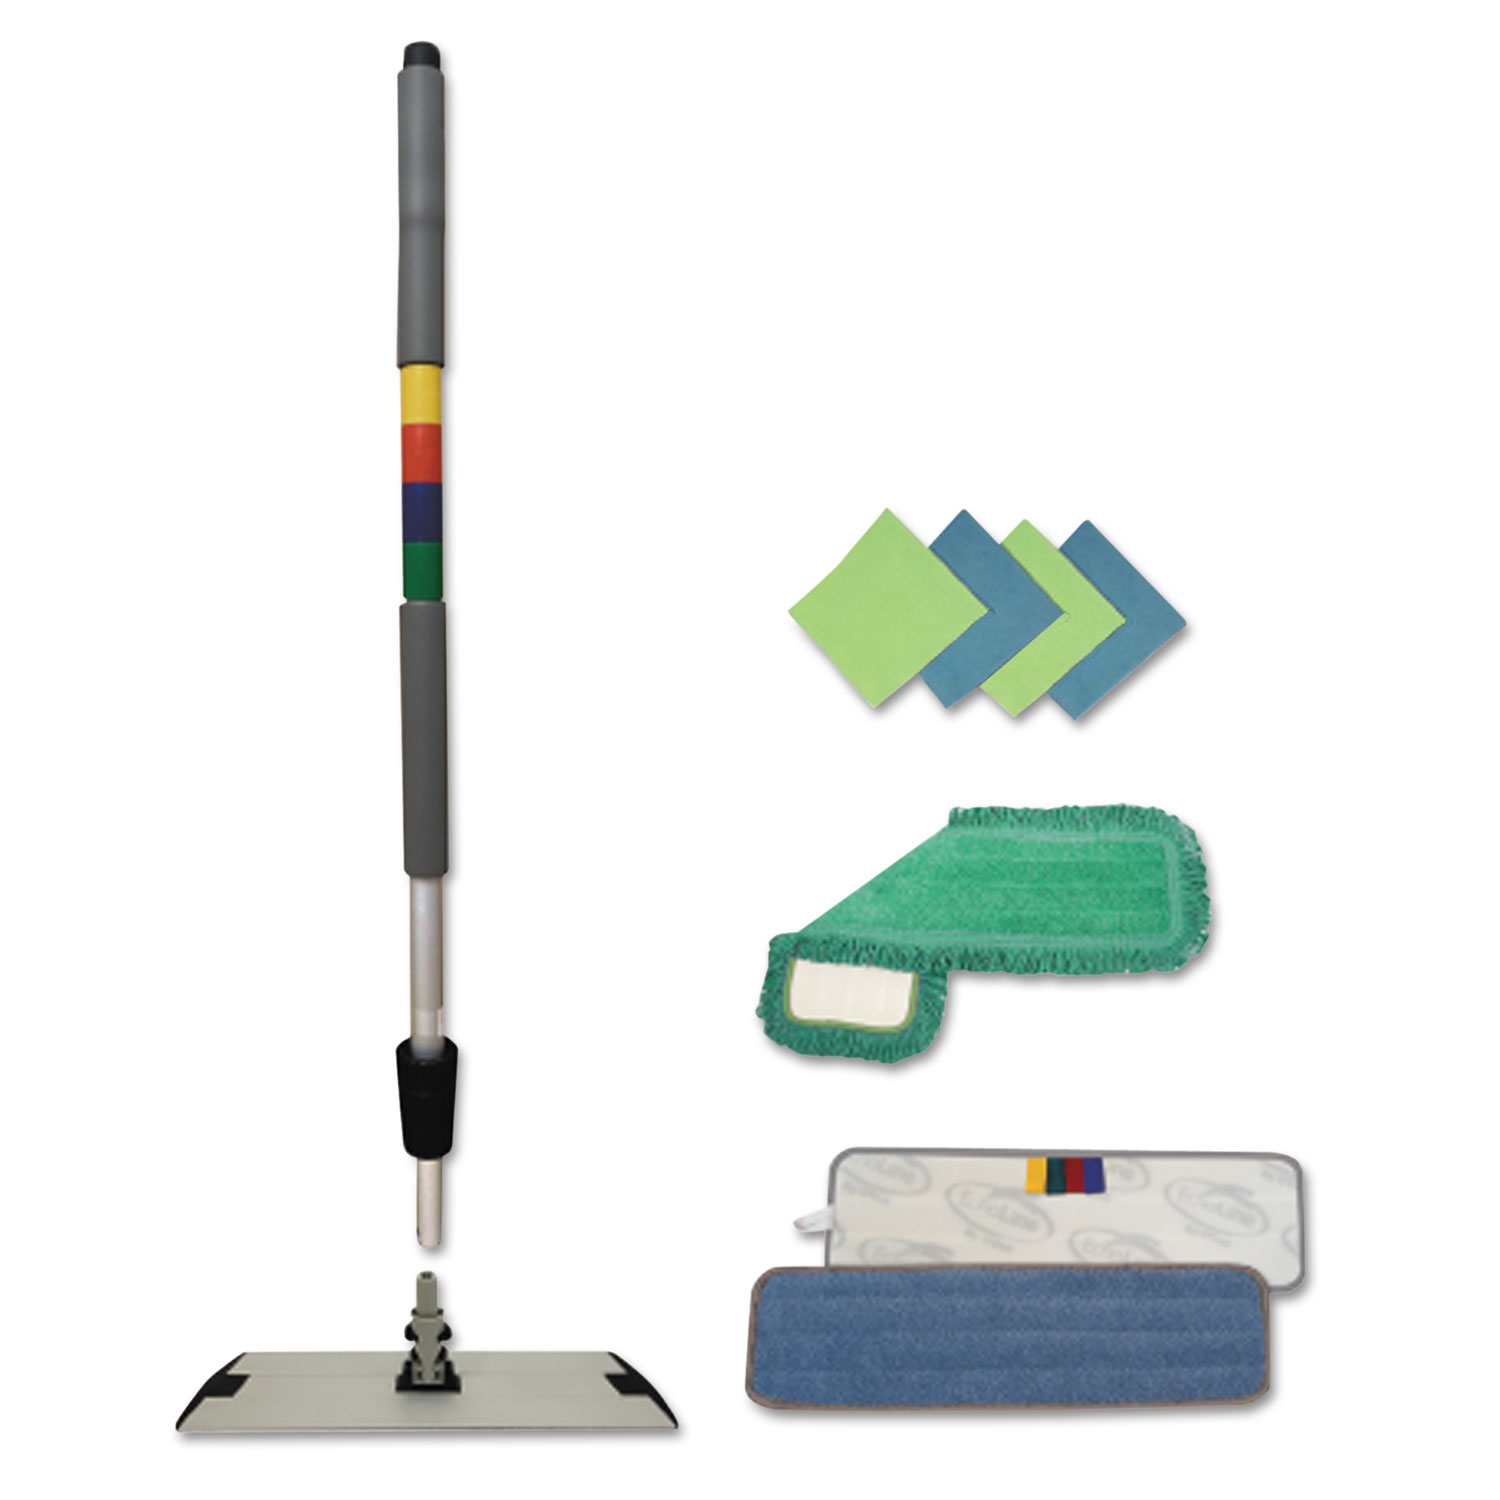  Boardwalk BWKMFKIT Microfiber Mopping Kit, 18 Mop Head, 35-60Handle, Blue/Green/Gray (BWKMFKIT) 